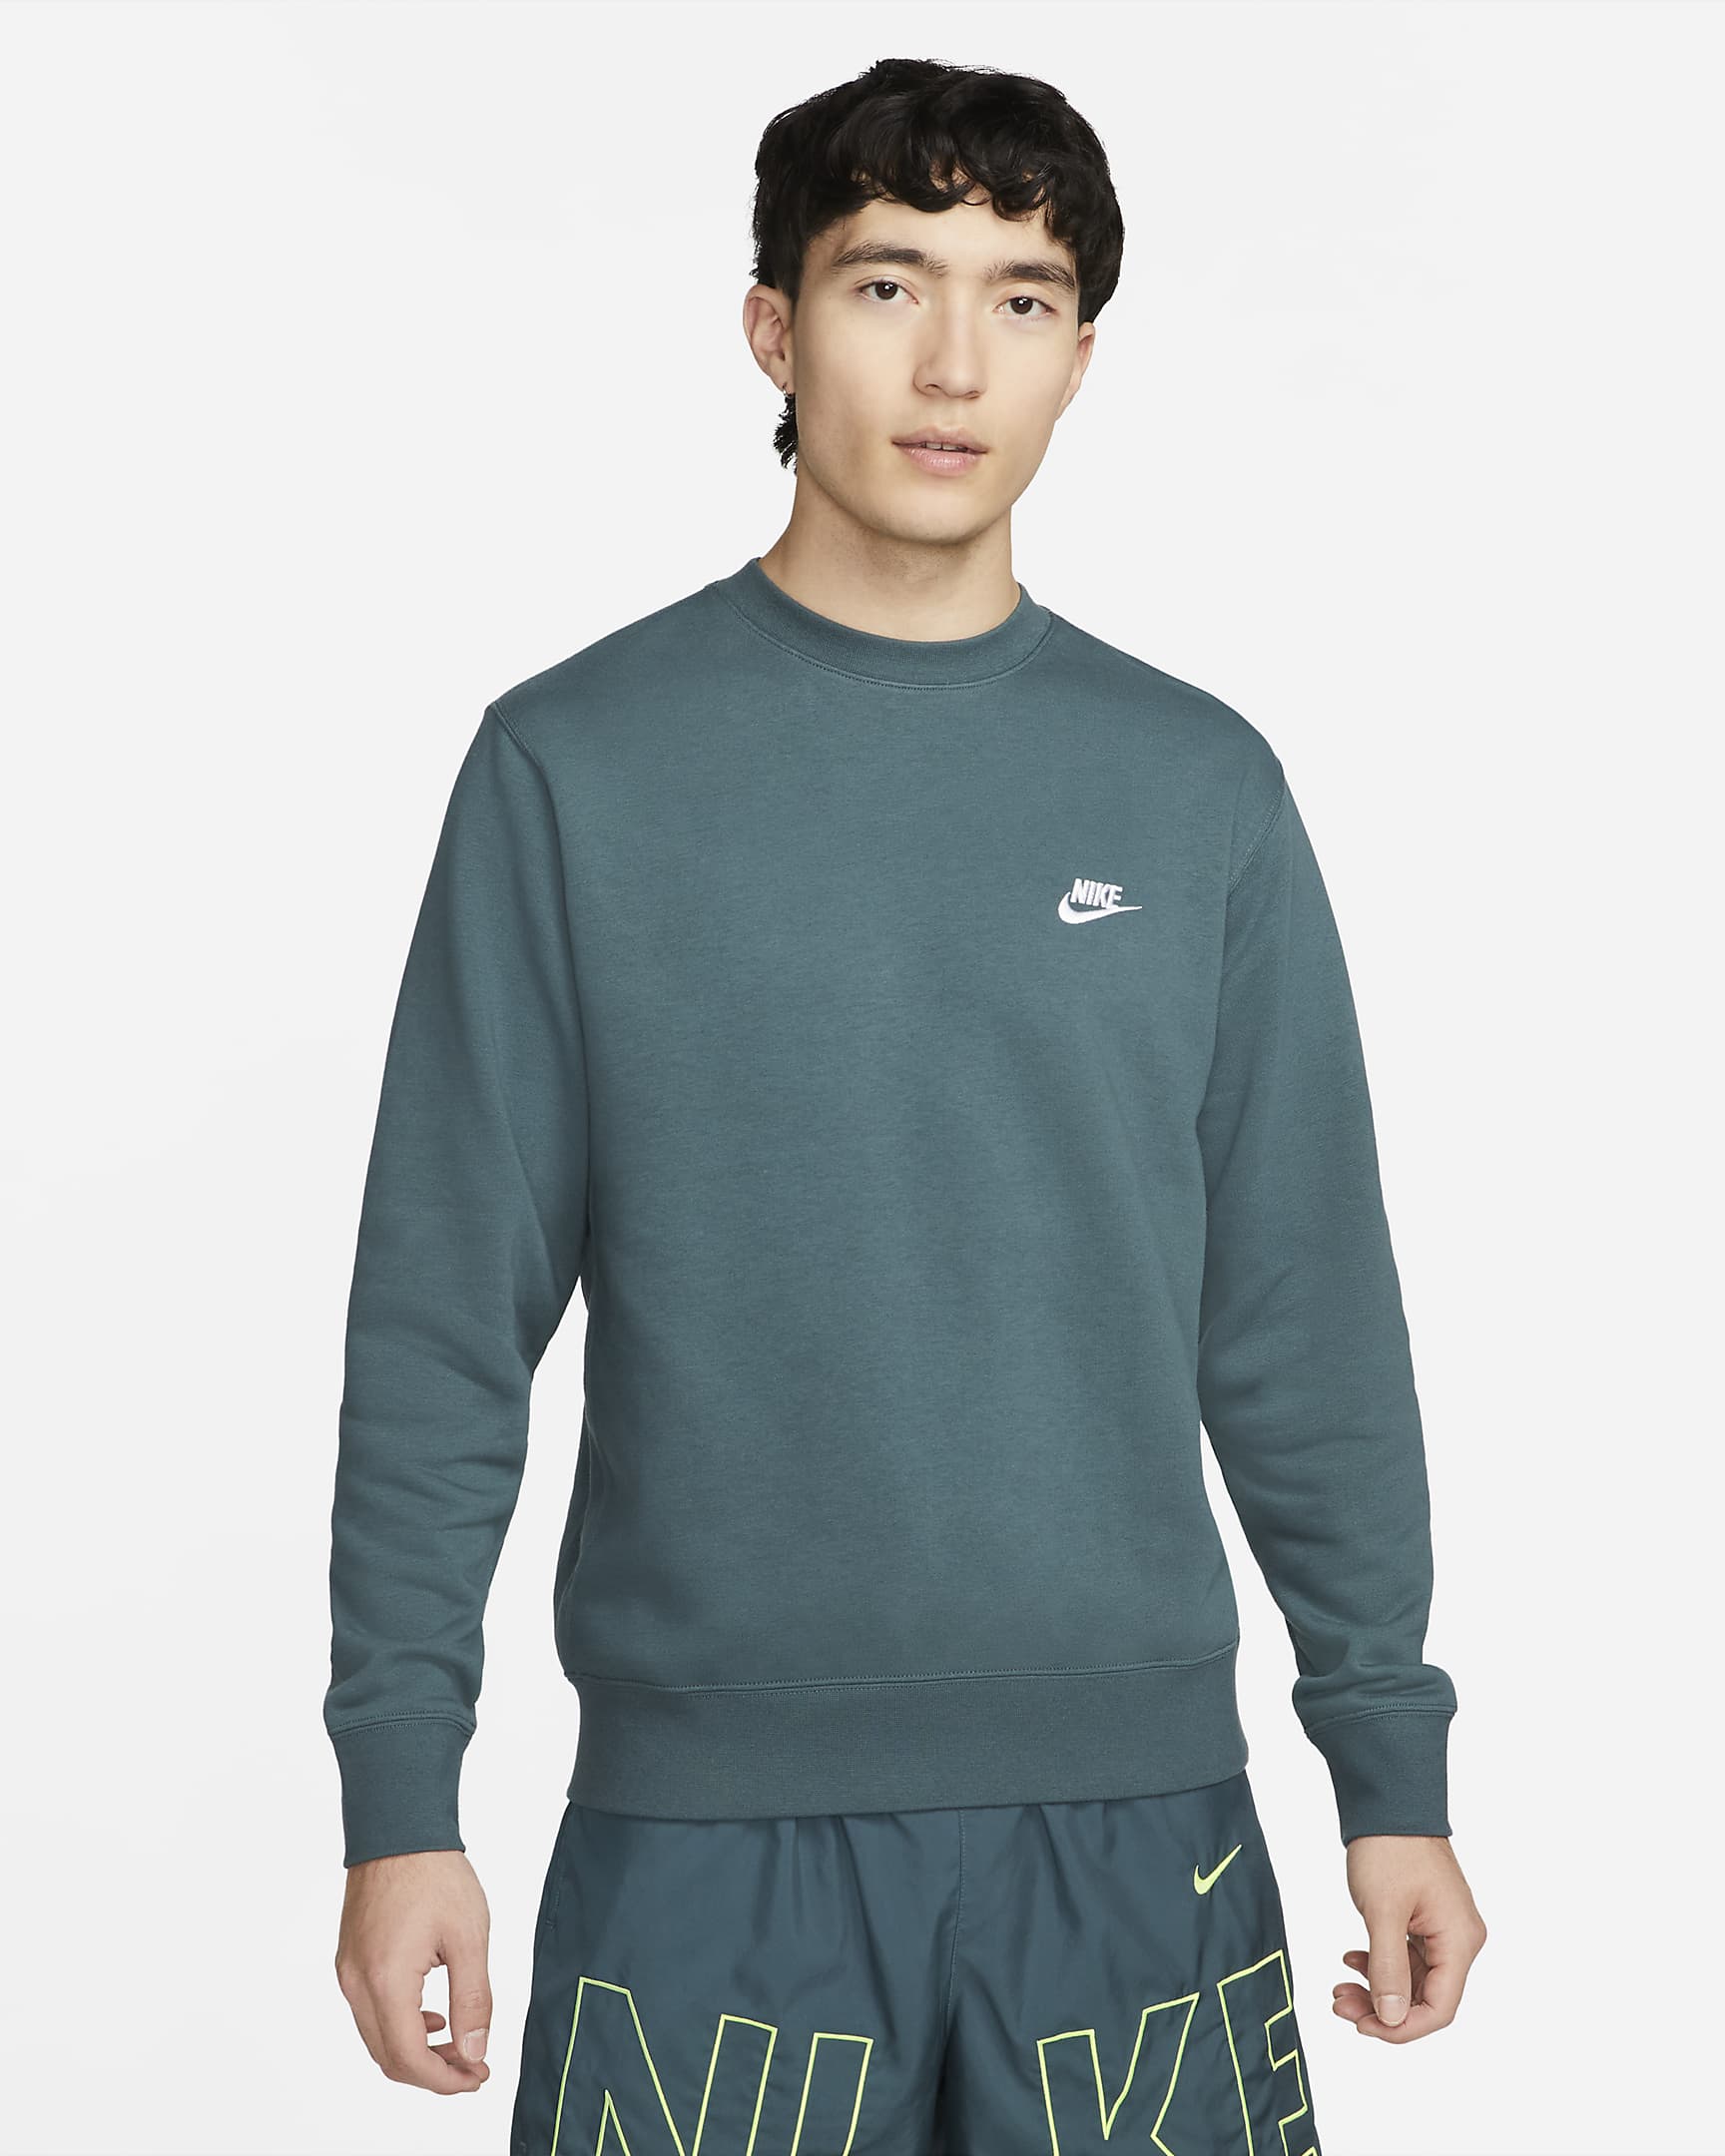 Nike Sportswear Men's Crew-Neck Sweatshirt. Nike SG